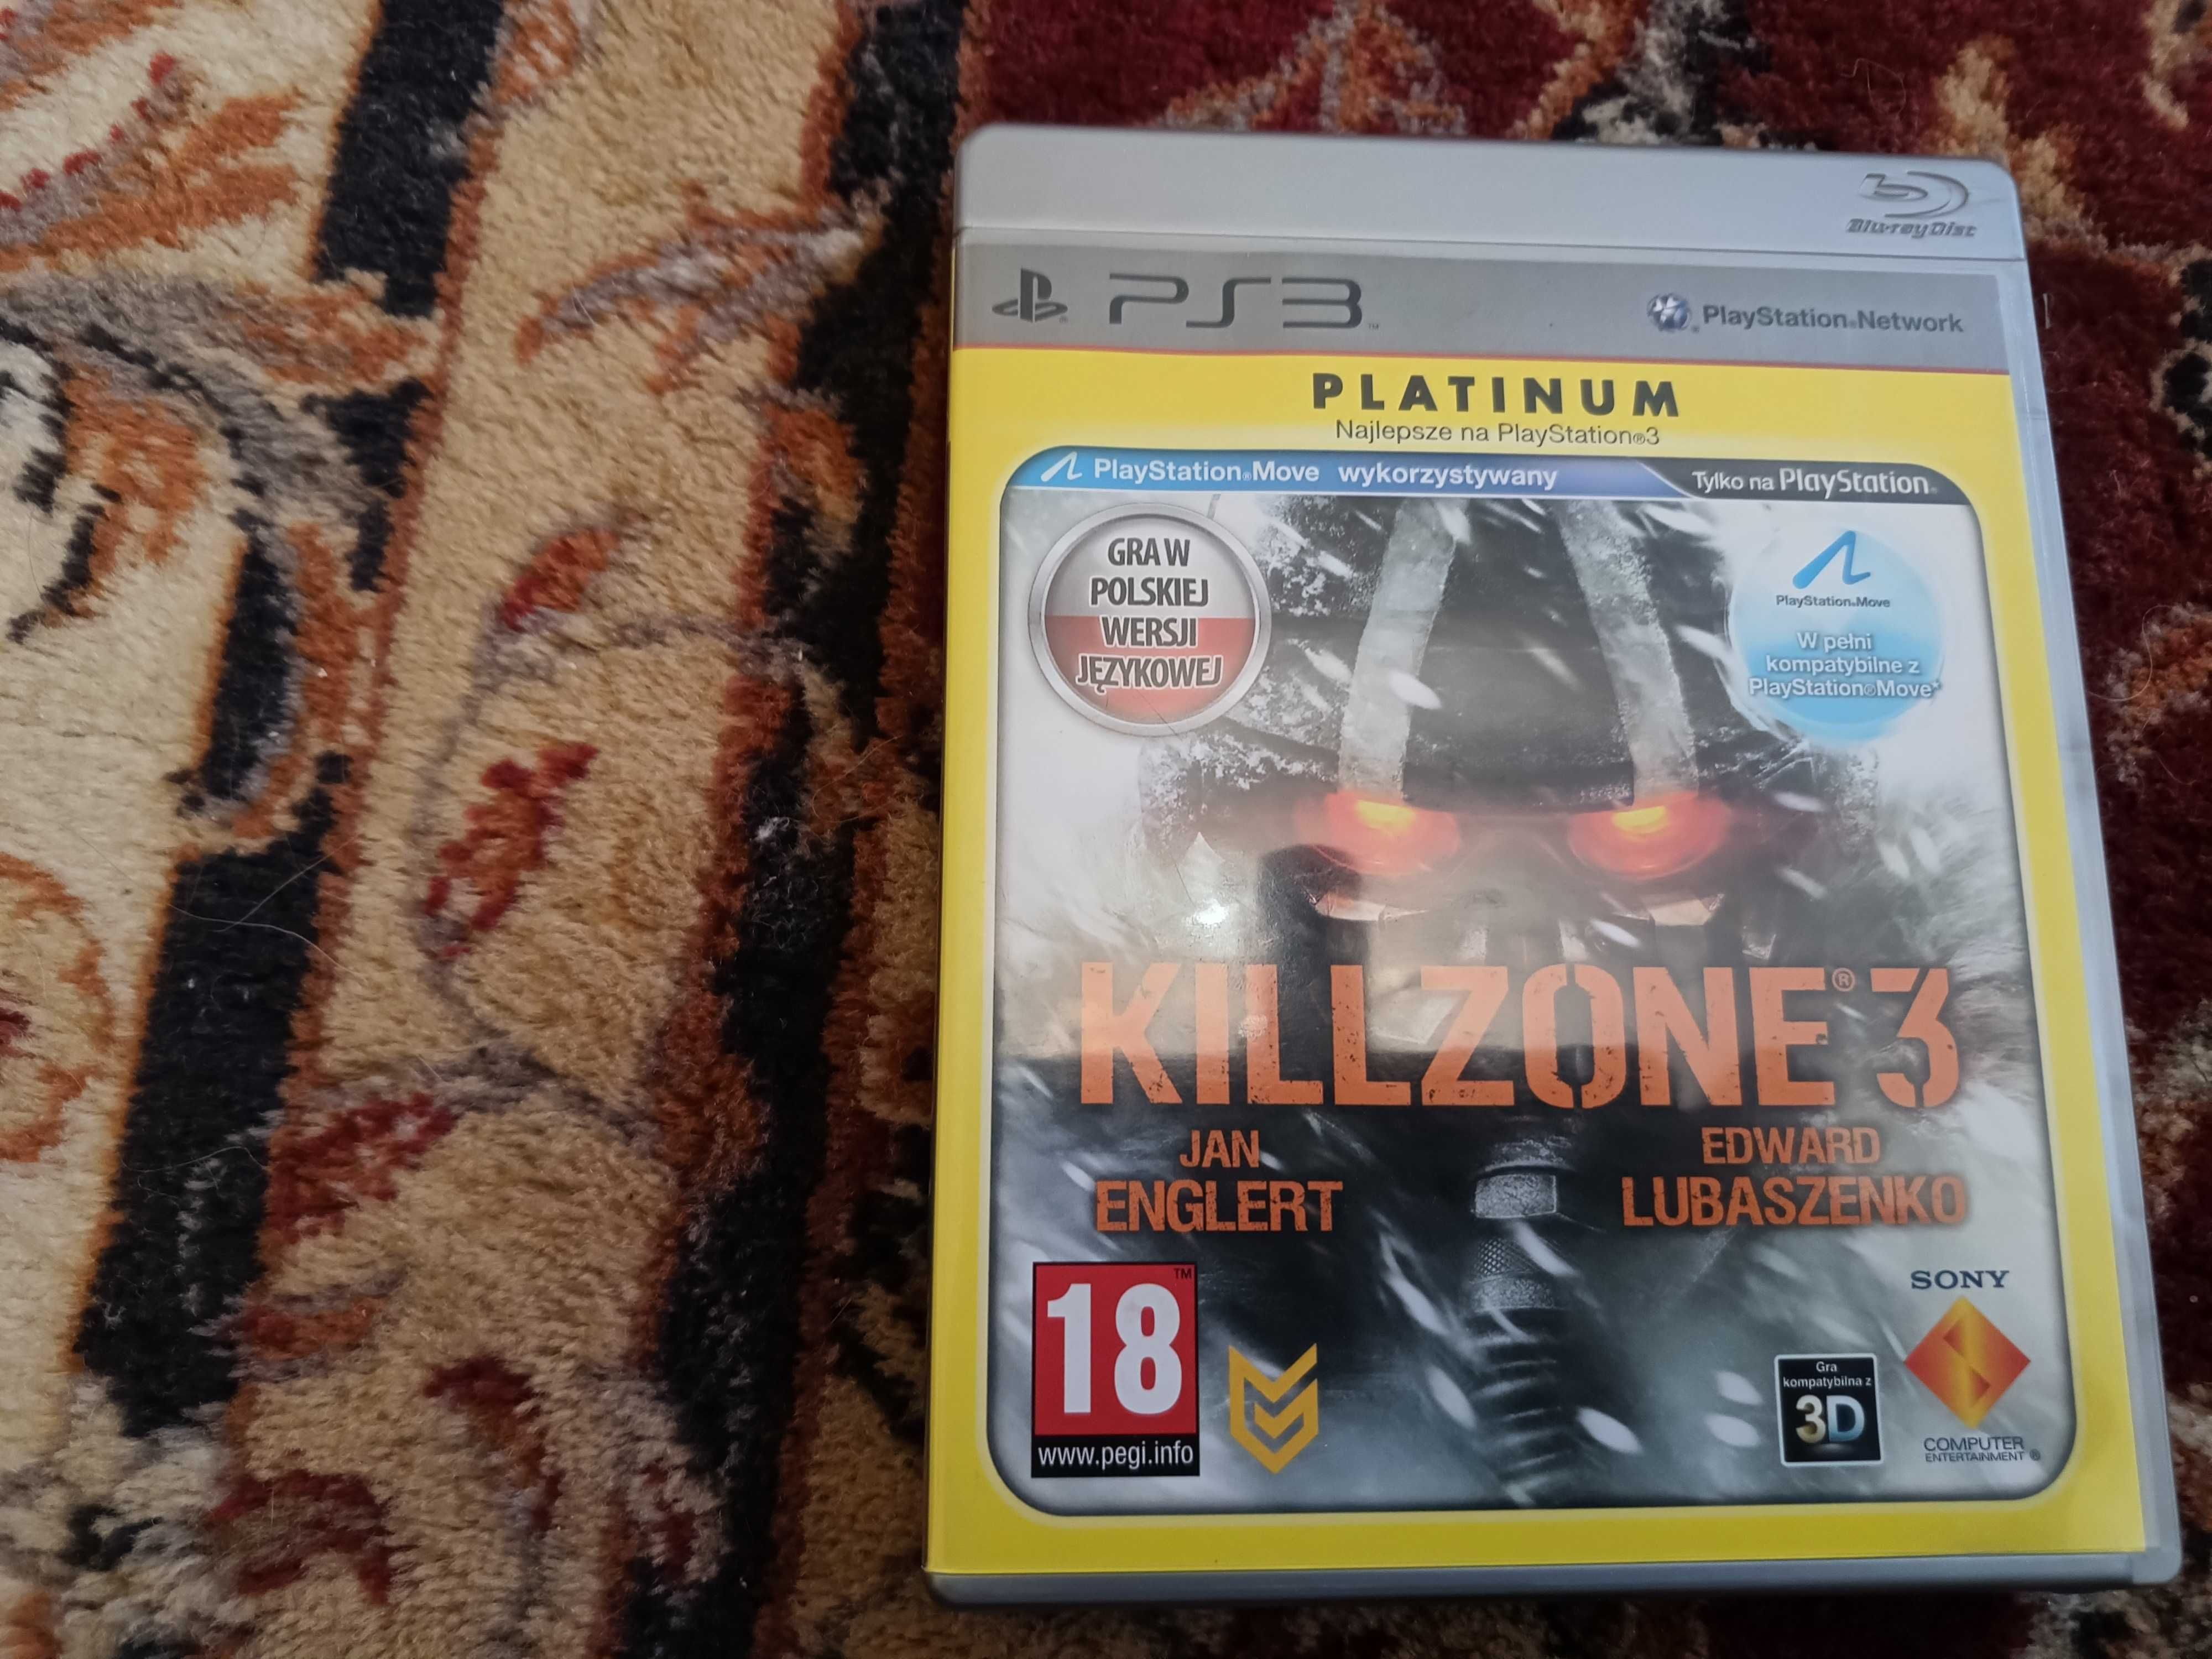 PS3 Kill zosne 3